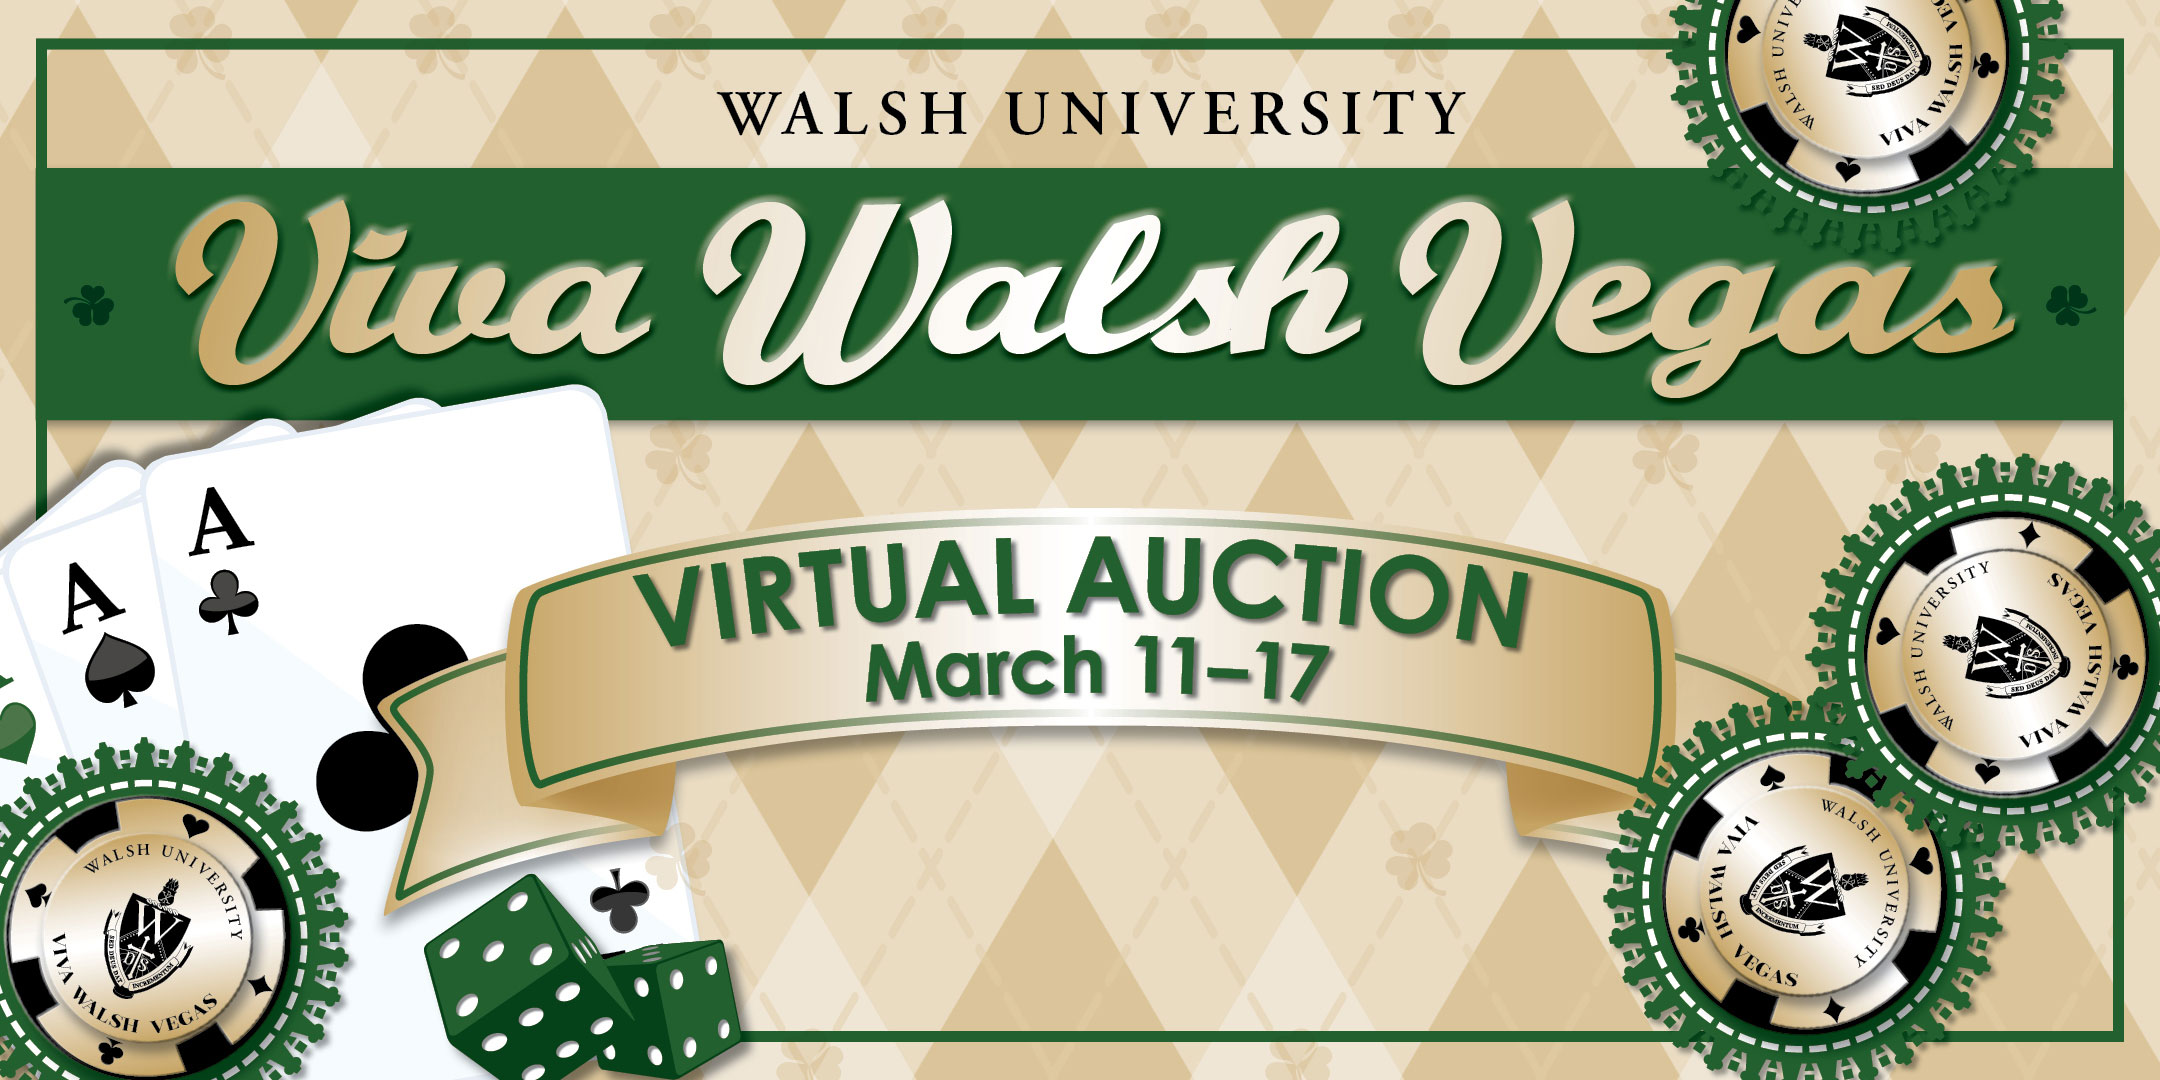 image: header for Viva Walsh Vegas event